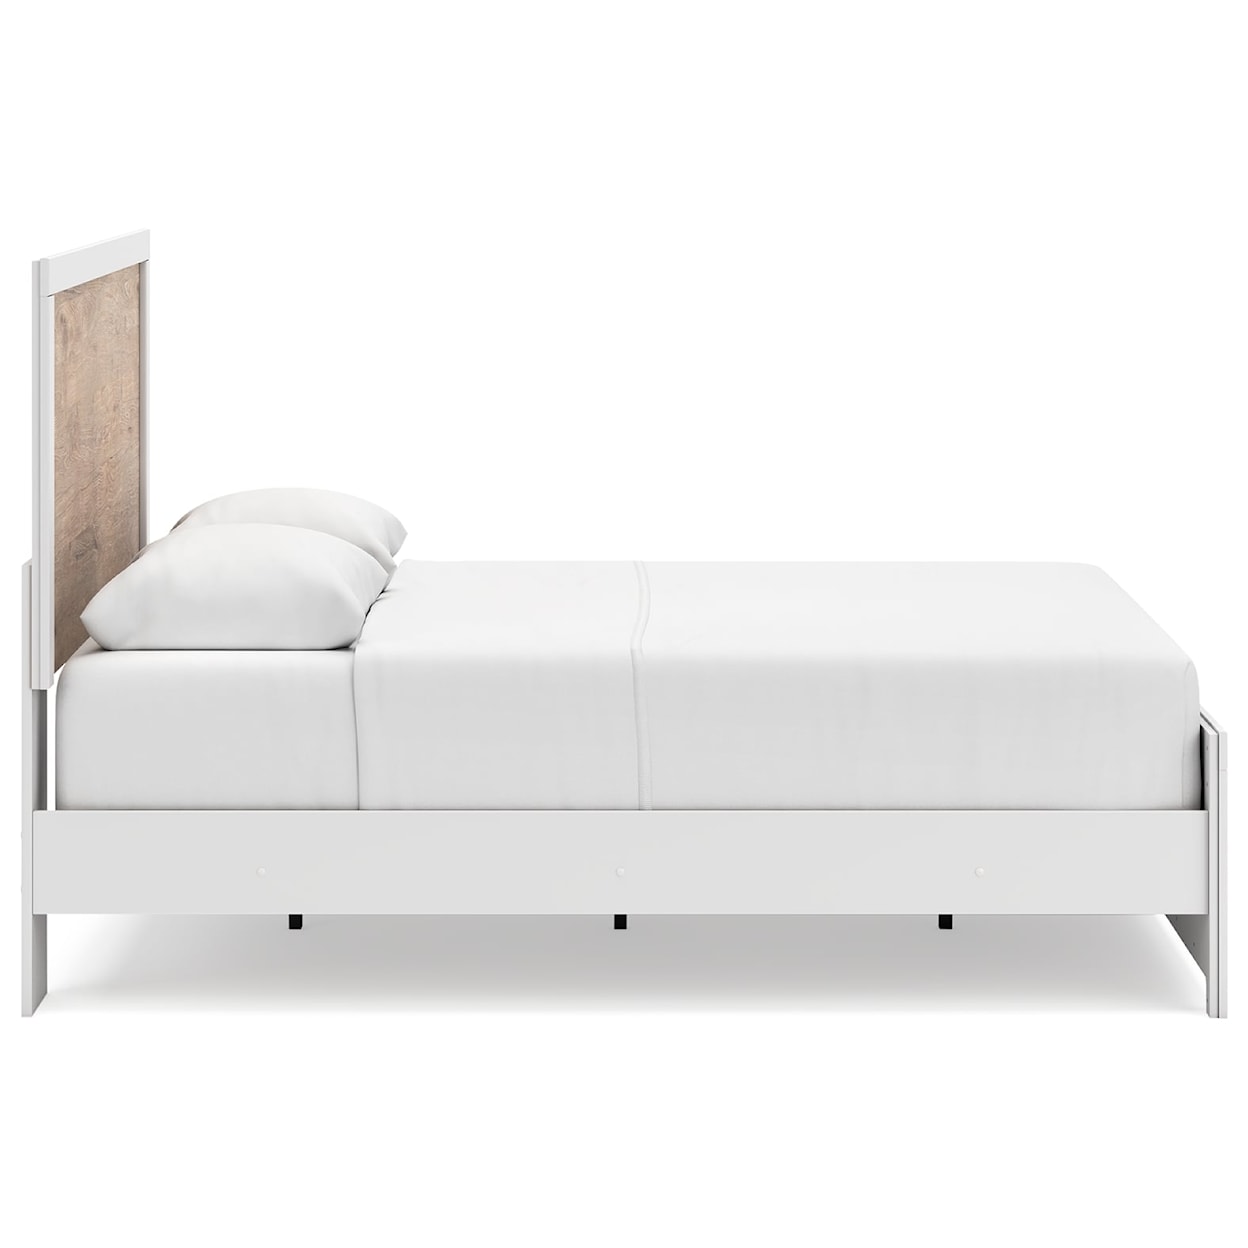 Ashley Furniture Signature Design Charbitt Queen Panel Bed